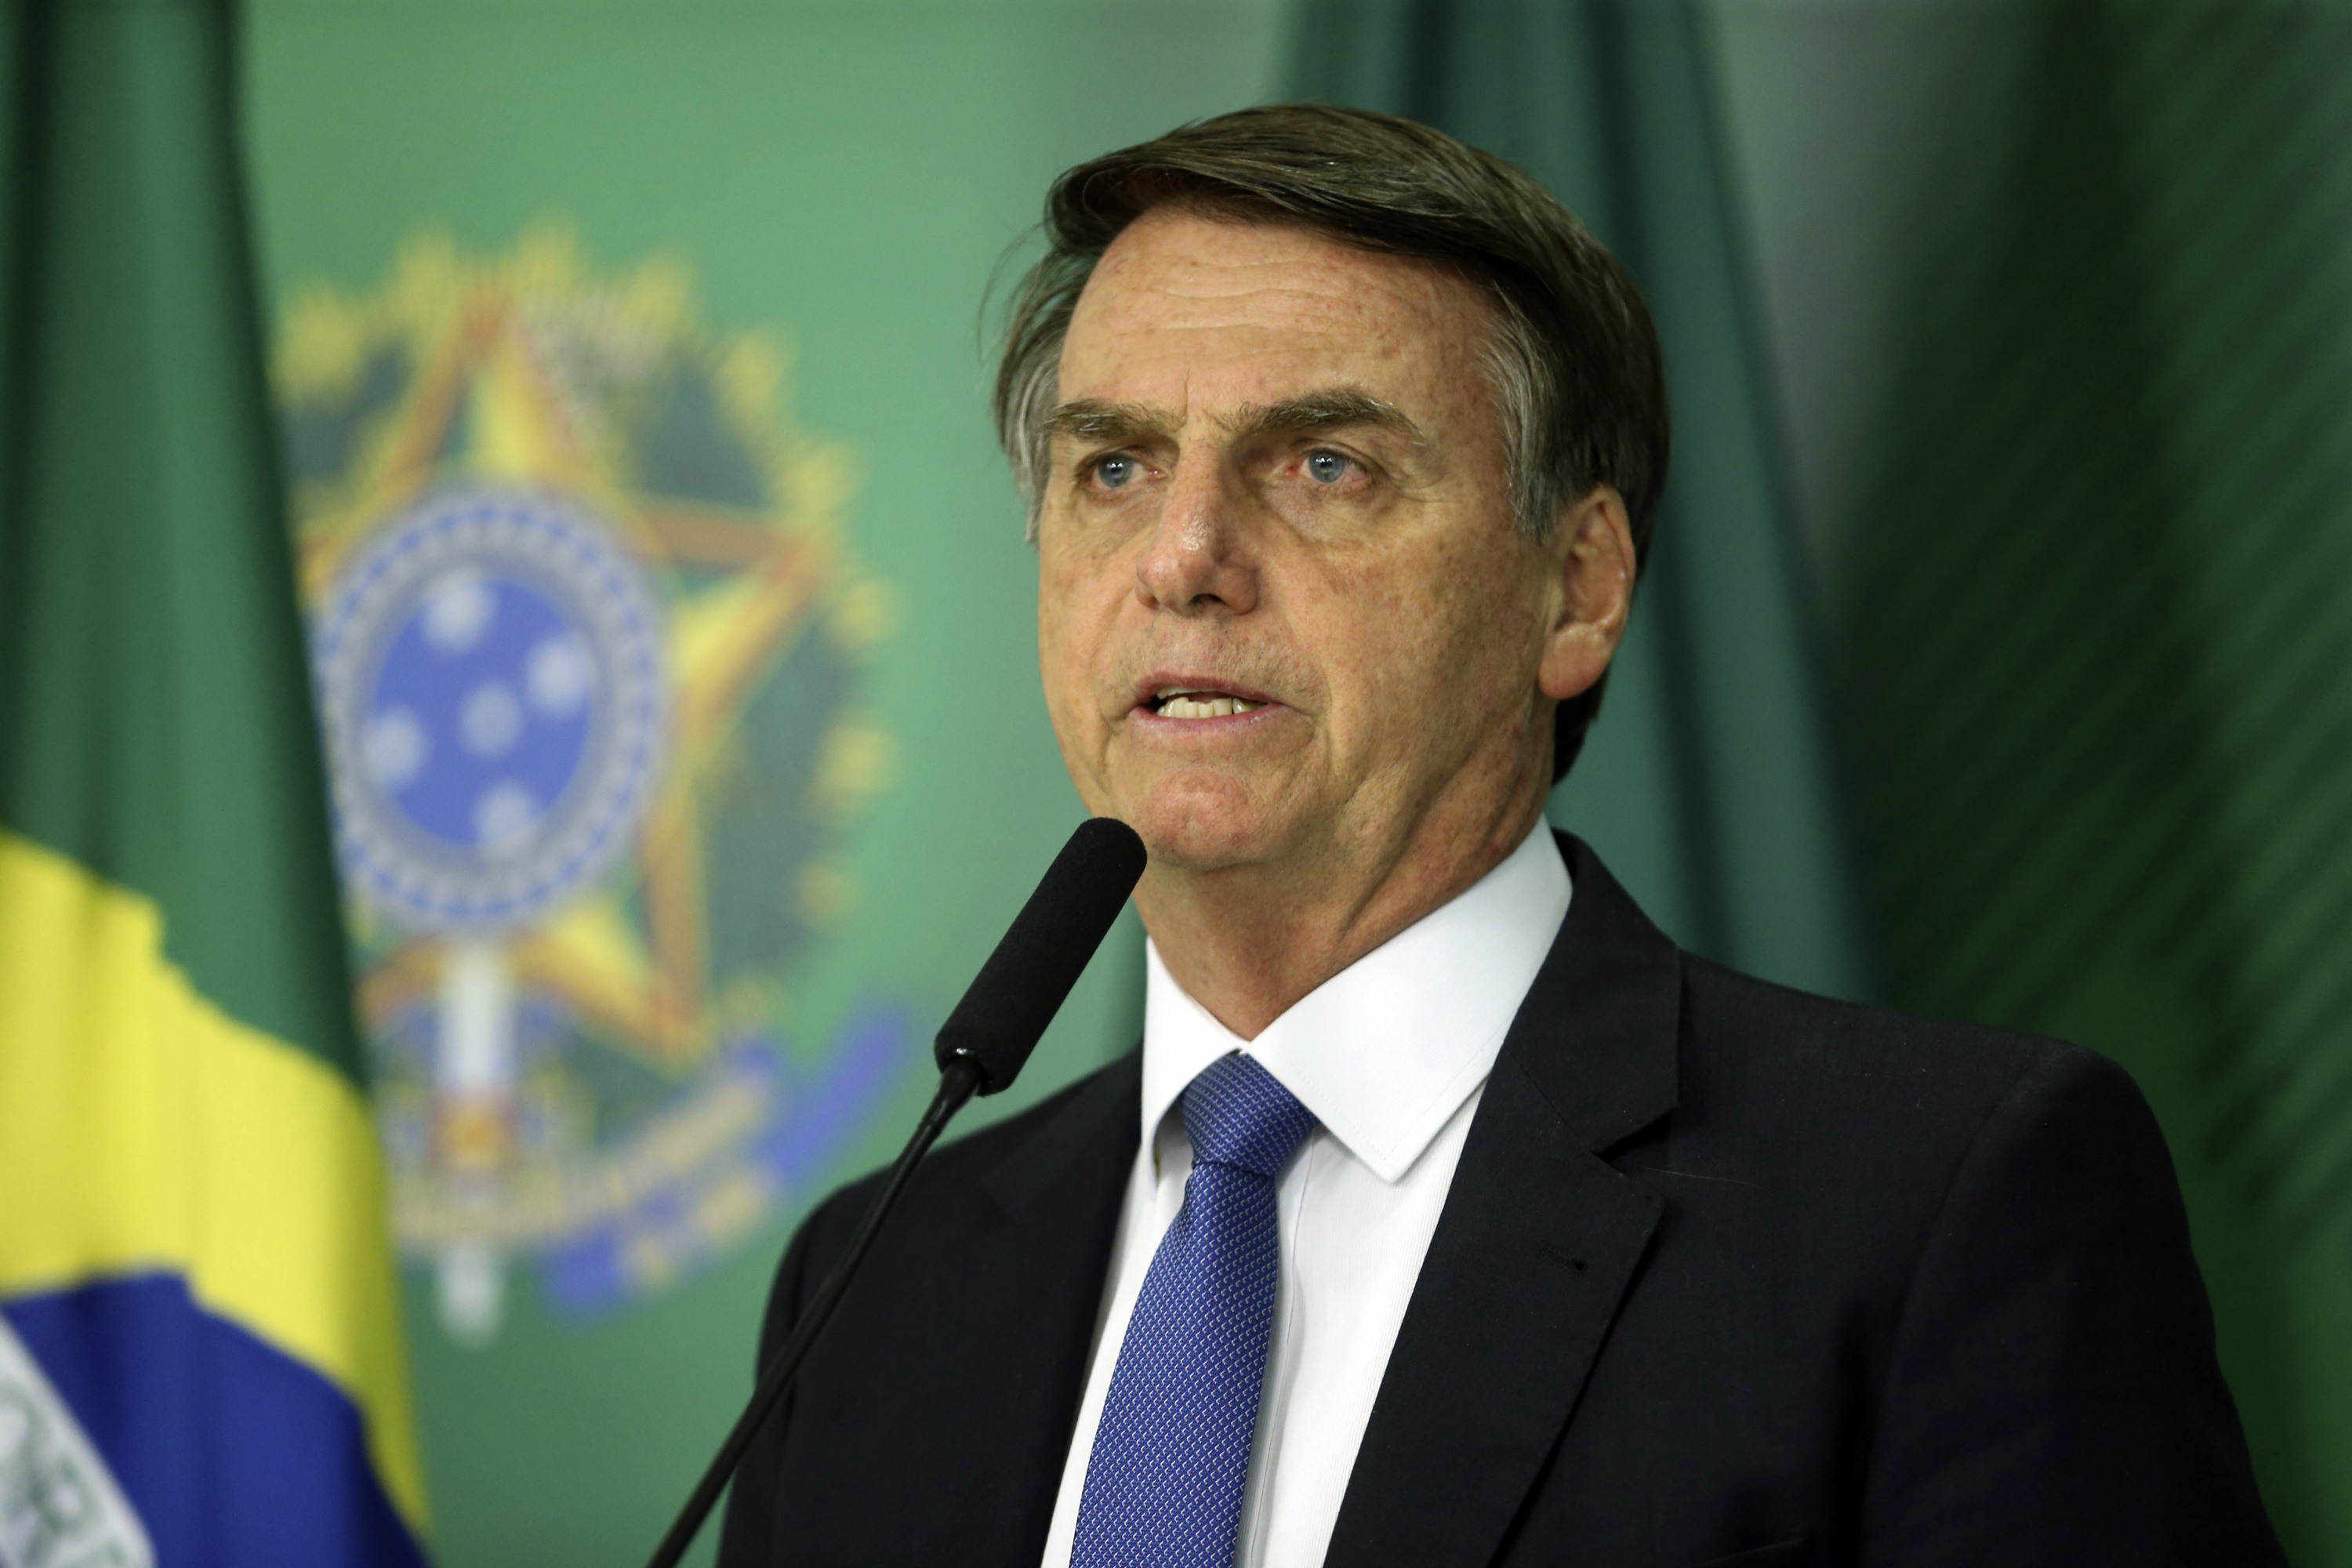 “Não estou no Nordeste, estou no Brasil”, diz Bolsonaro